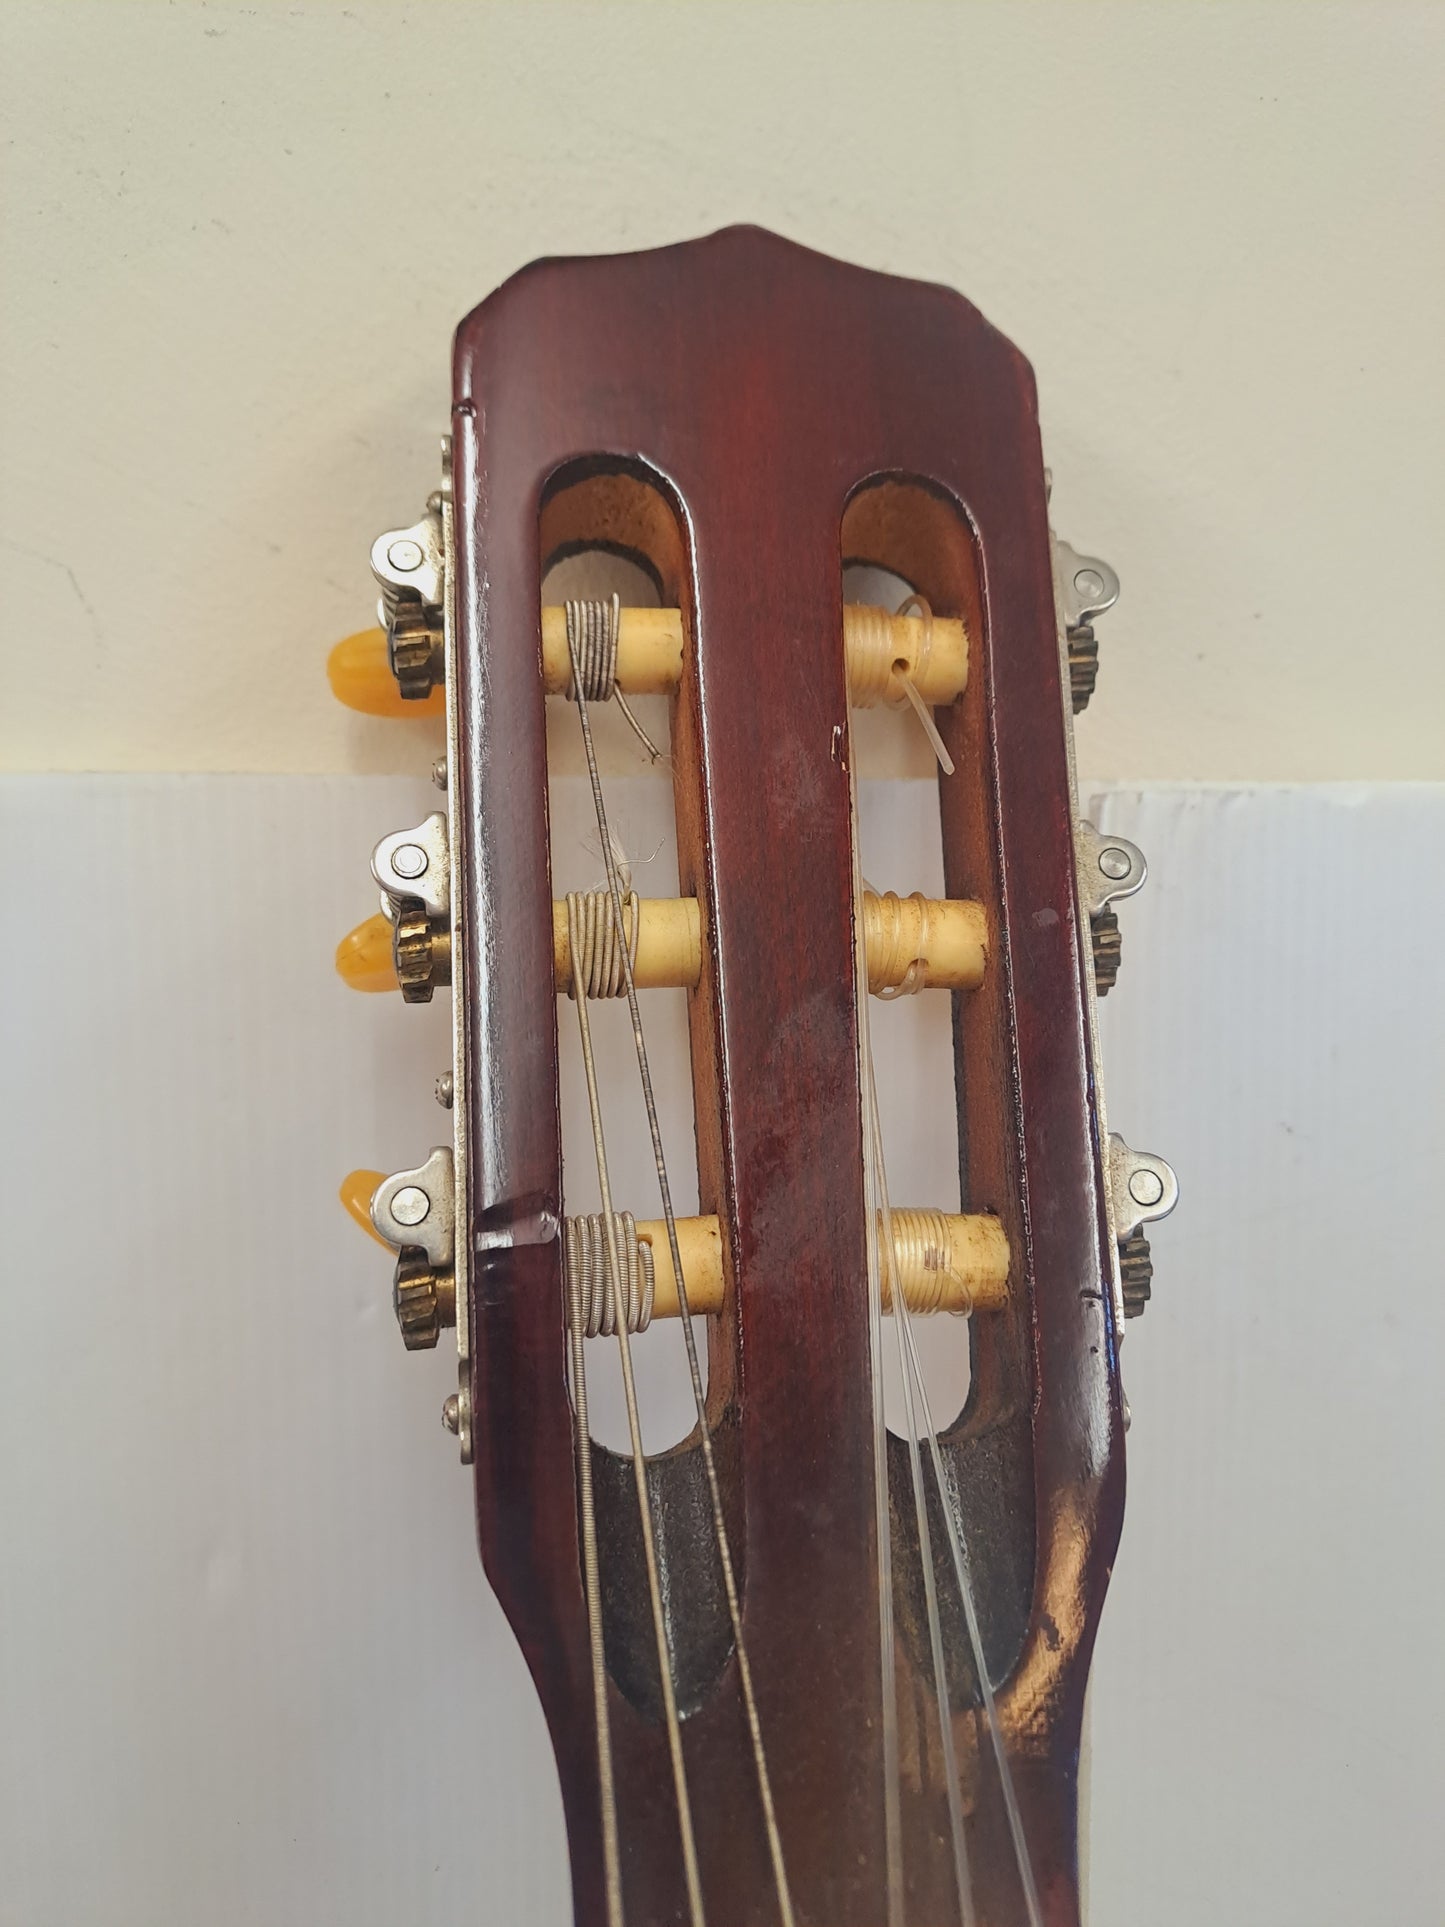 Terada Guitar Model S 616 N